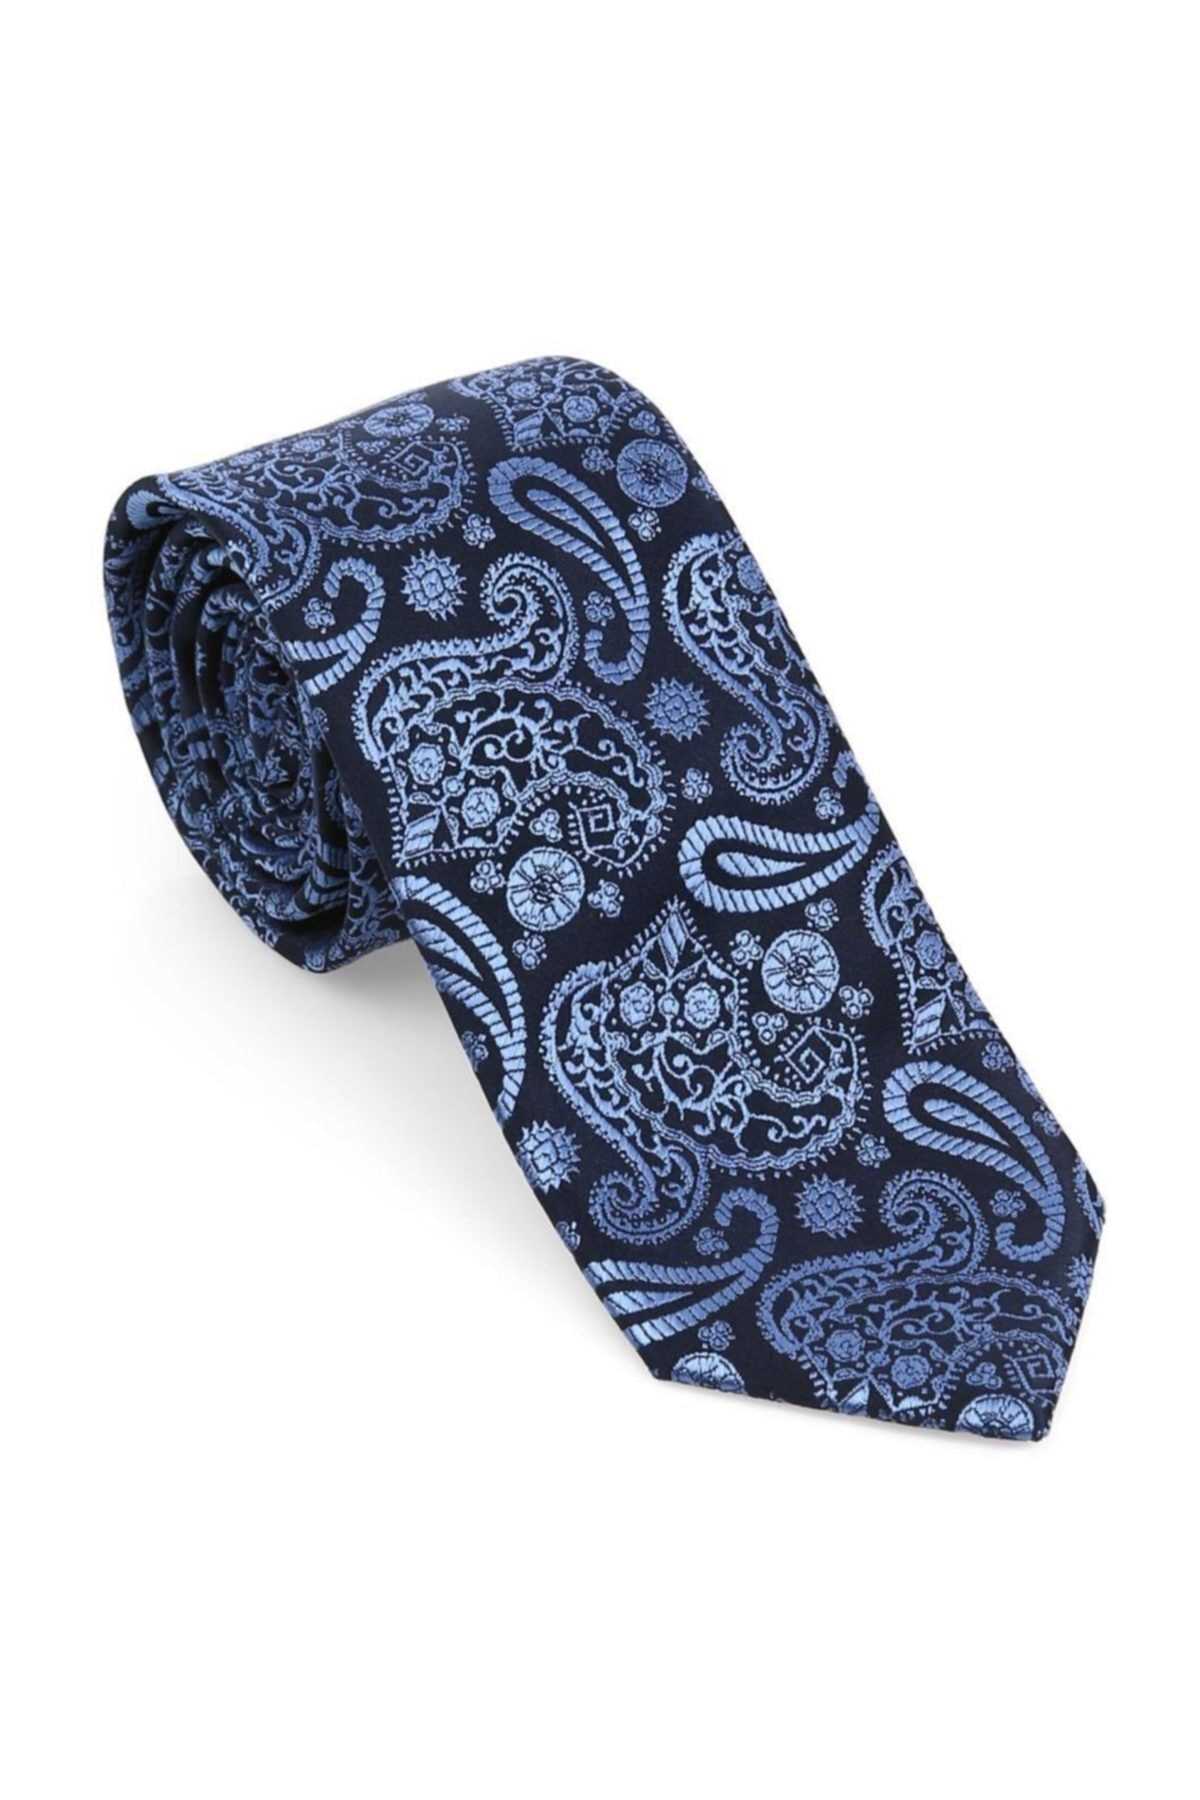 خرید اینترنتی کراوات مردانه خاص برند Brianze رنگ آبی کد ty36985773